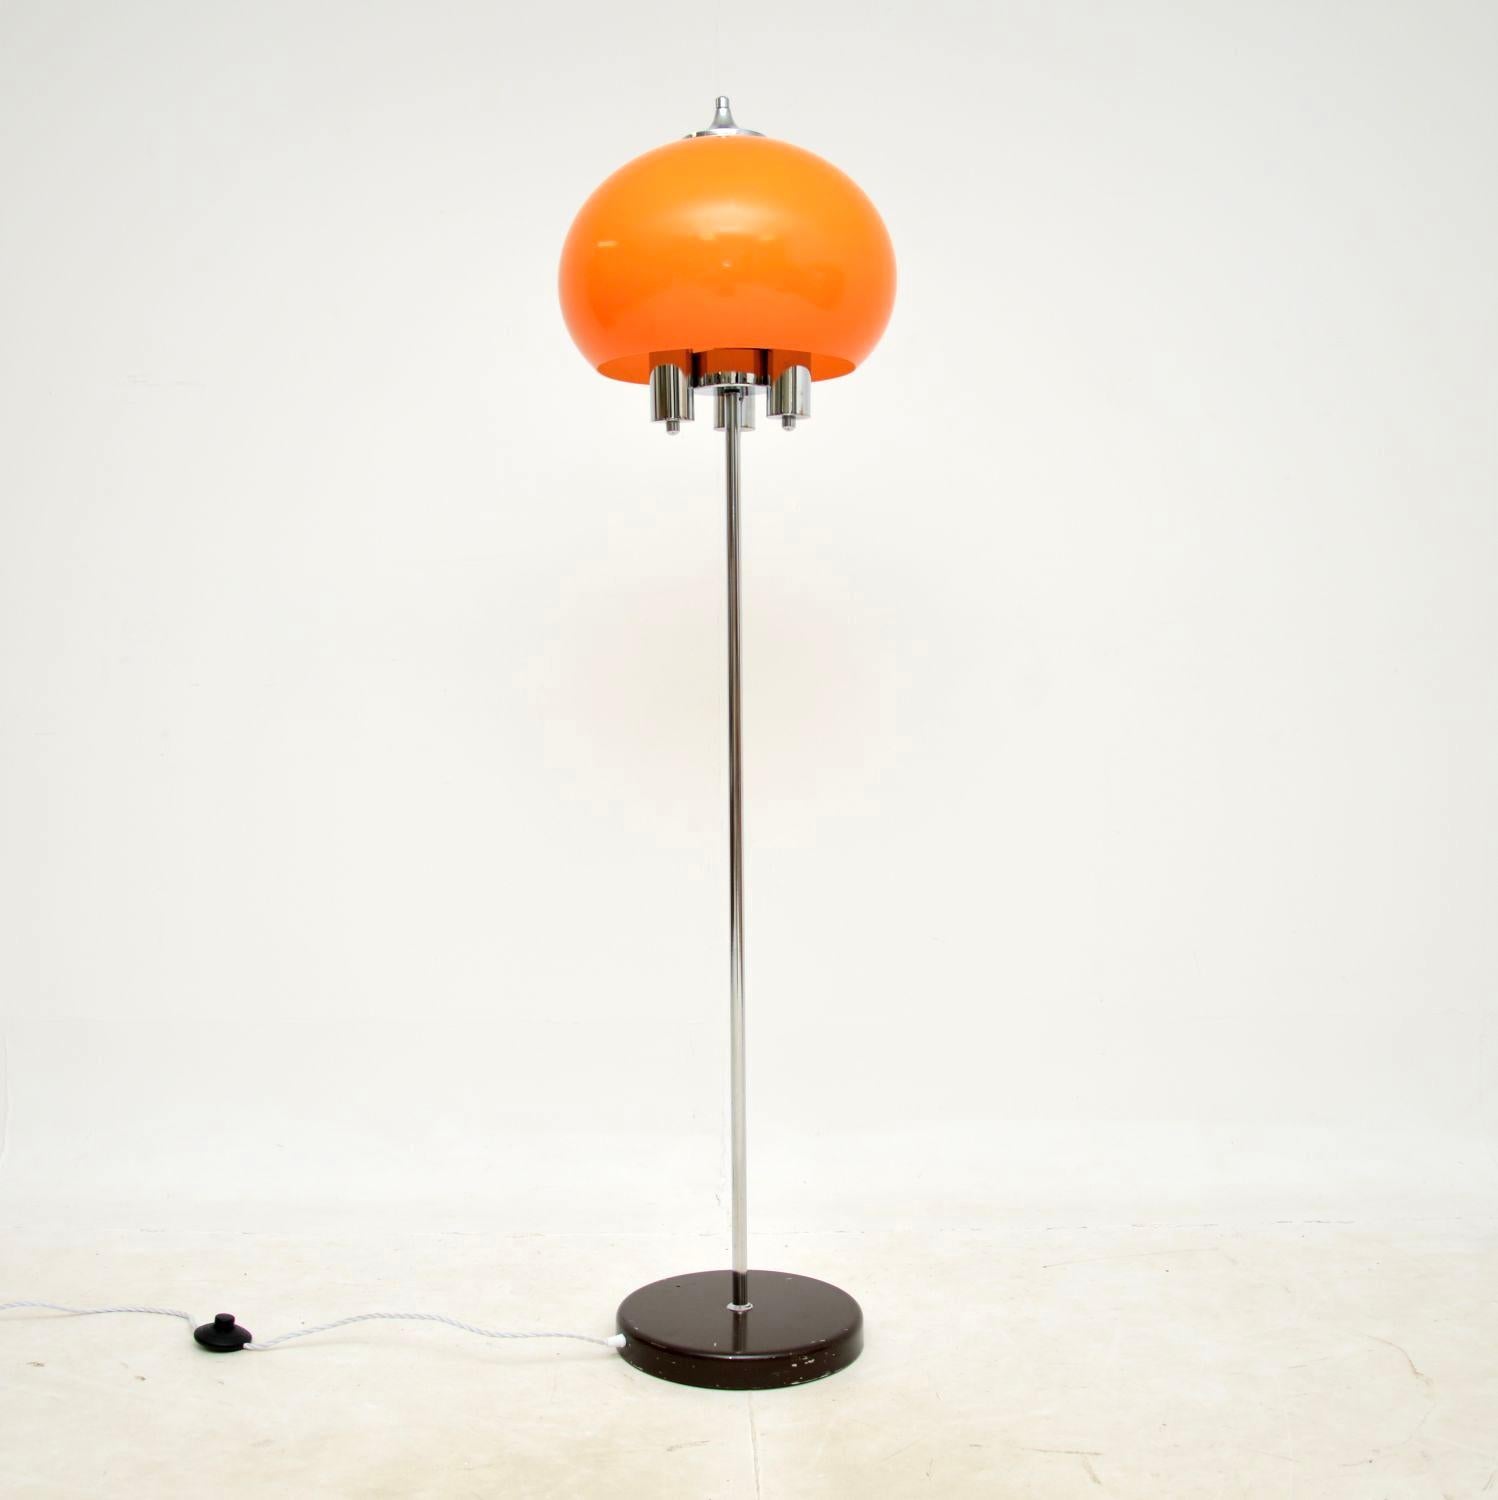 Eine stilvolle und sehr gut gemachte italienische Chrom-Stehlampe aus den 1970er Jahren.

Das verchromte Gestell ist von erstaunlicher Qualität und verfügt über drei Glühbirnenfassungen. Der fantastische orangefarbene Acrylschirm ist schön